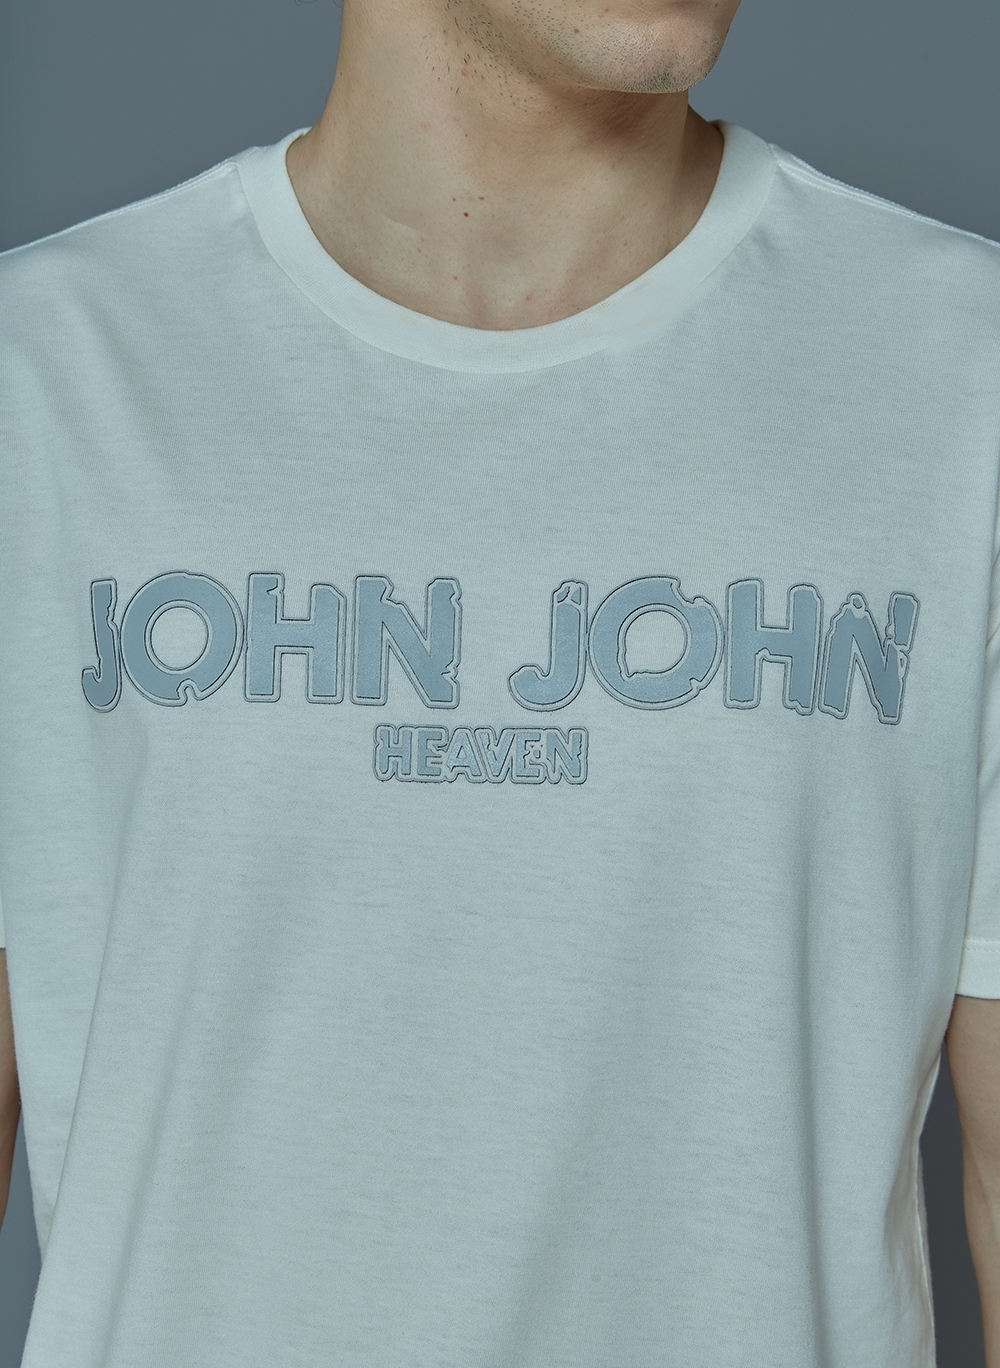 Camiseta Rg Carpa John John